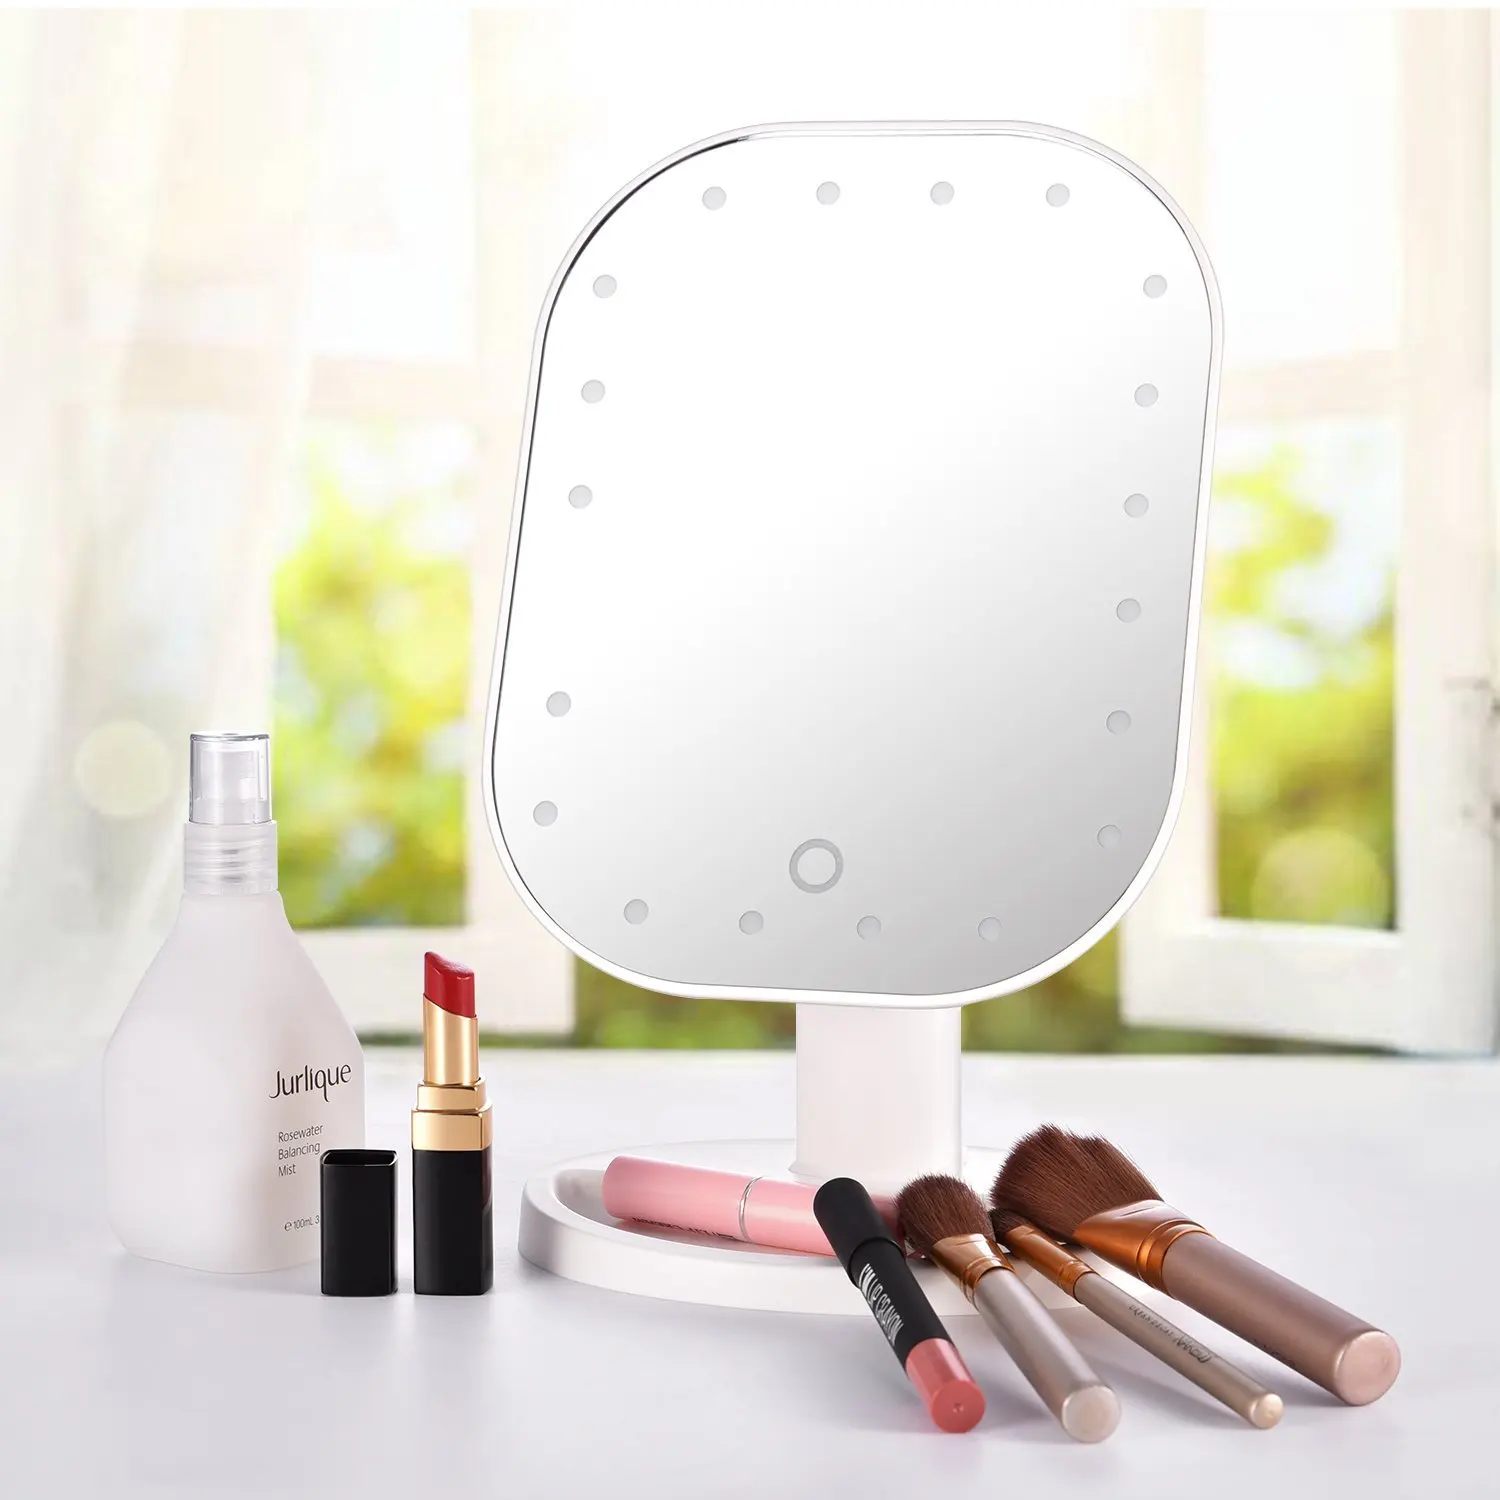 Освещенное зеркало для макияжа съемное 10X увеличение сенсорный экран туалетное зеркало портативное настольное косметическое зеркало